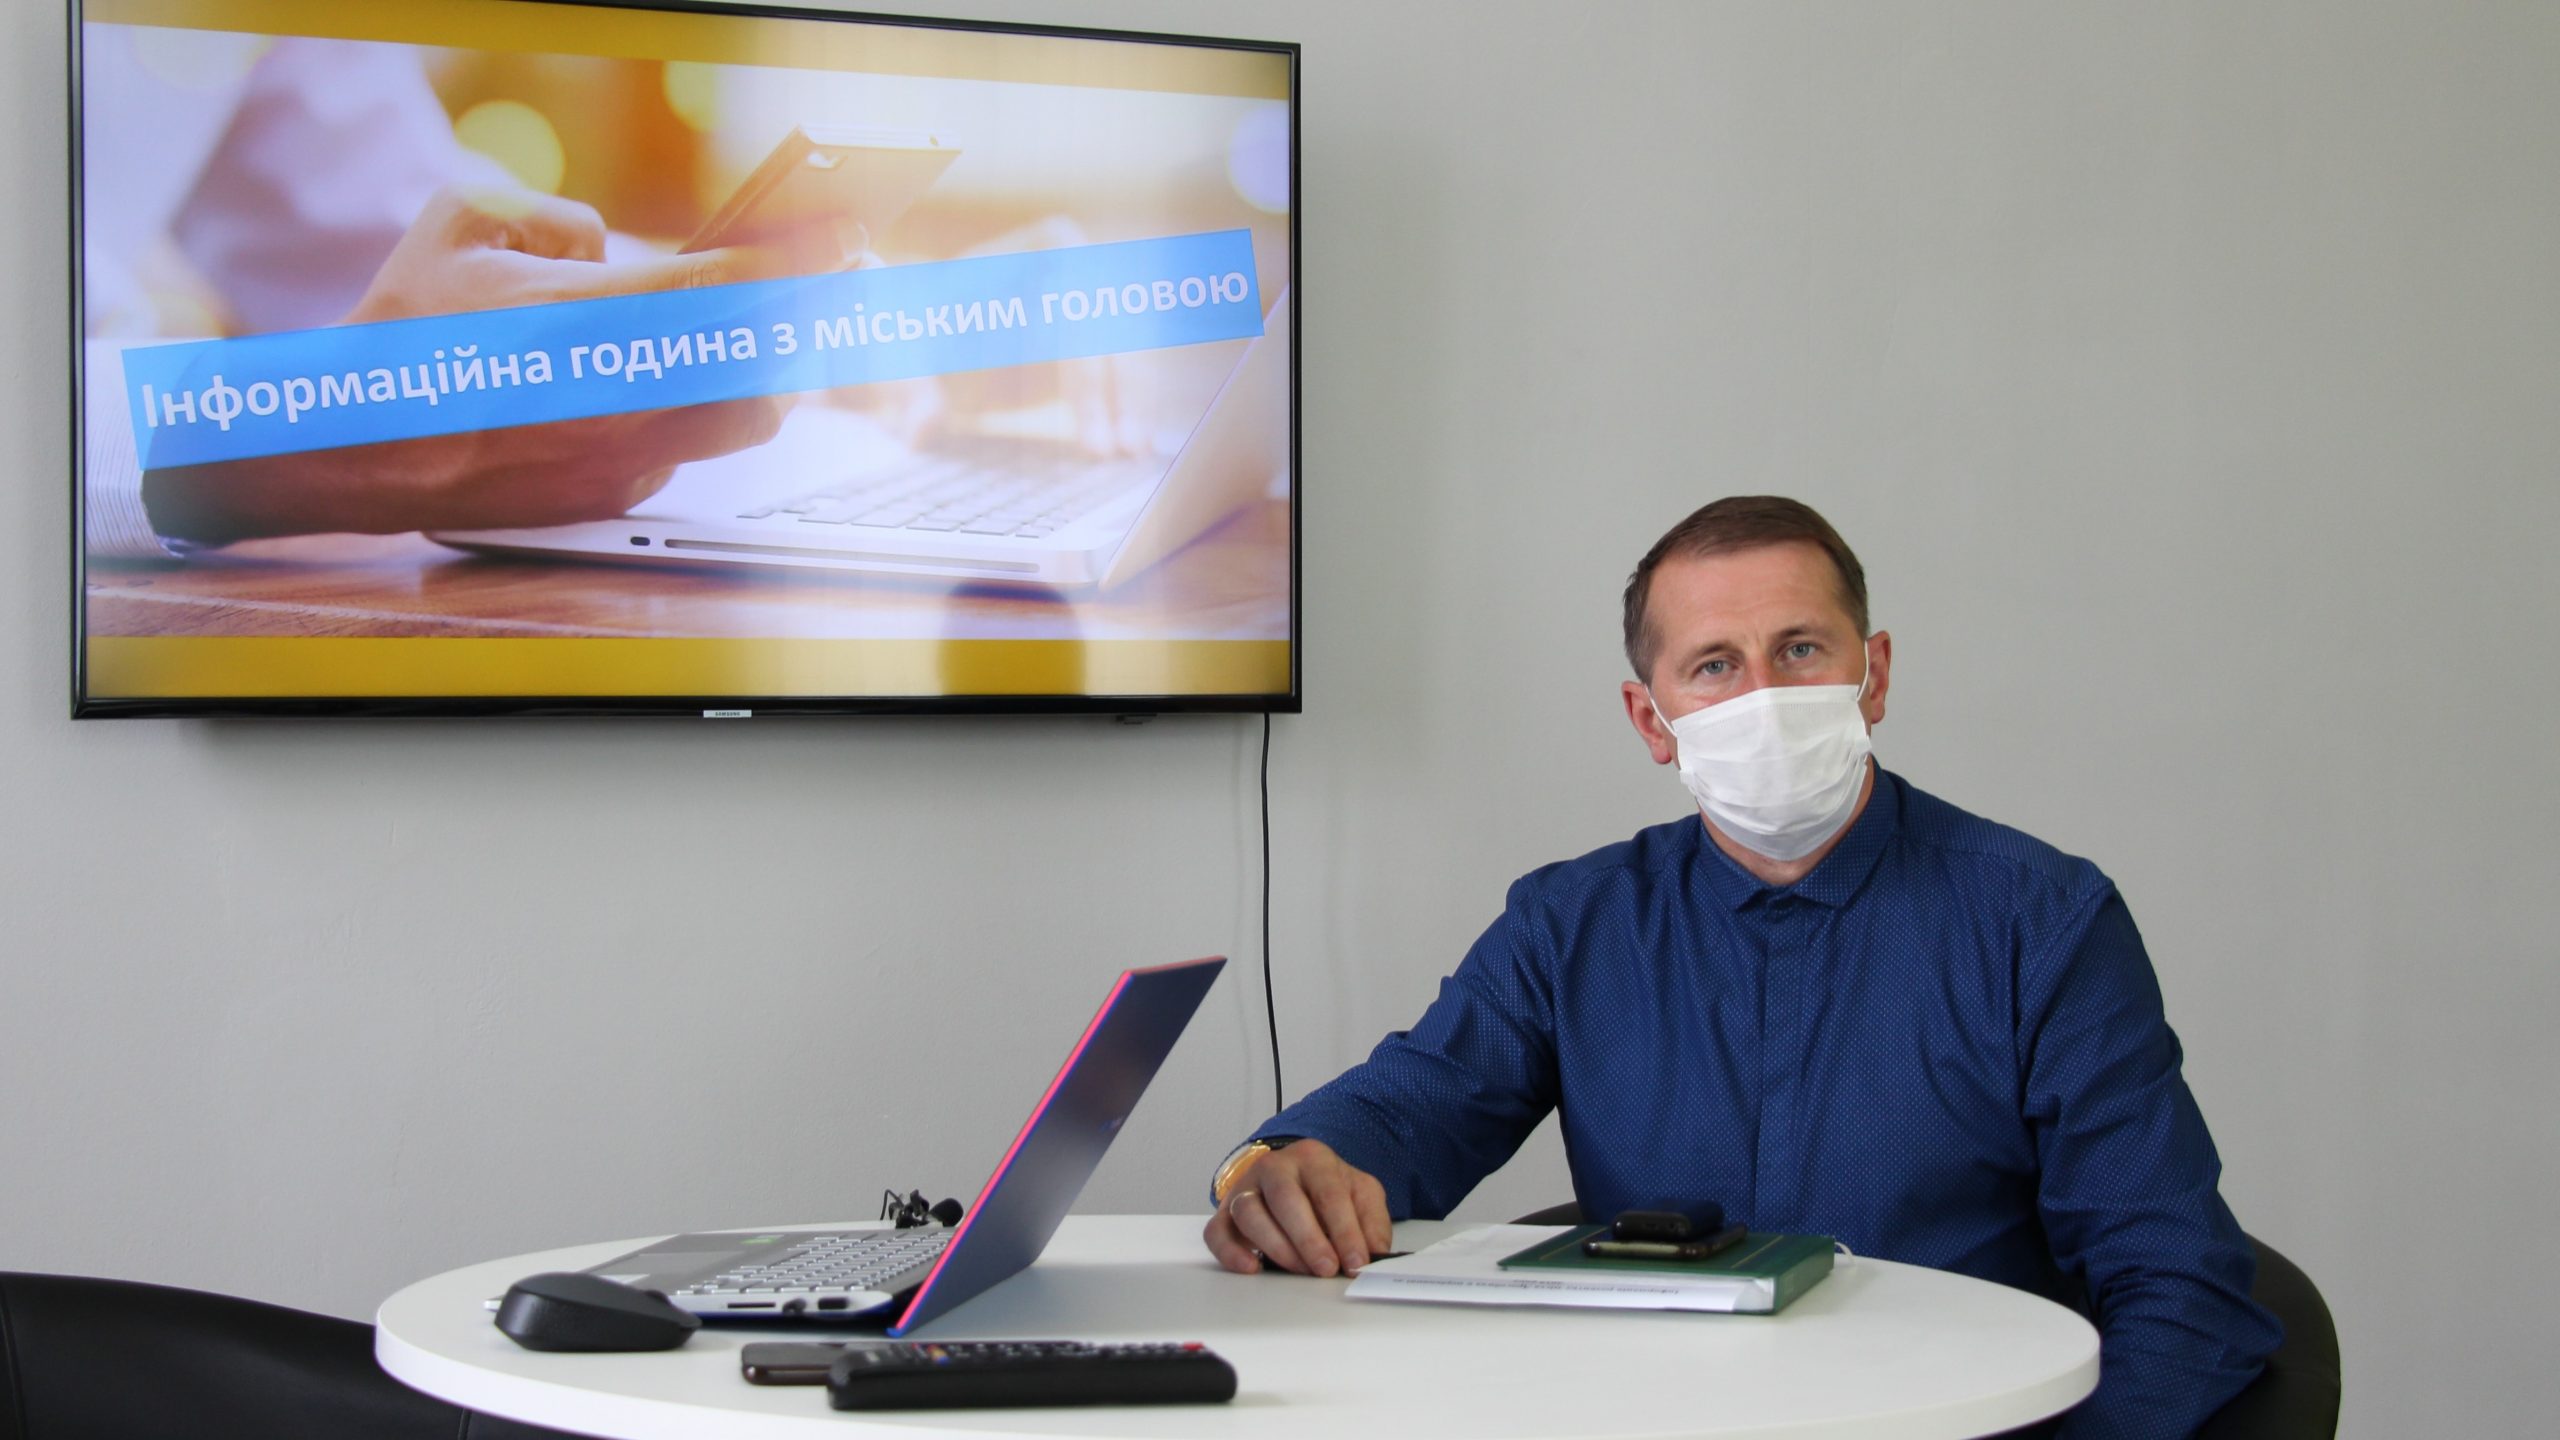 КМЦ «Дрогобич:»: Інформаційна година з міським головою Тарасом Кучмою